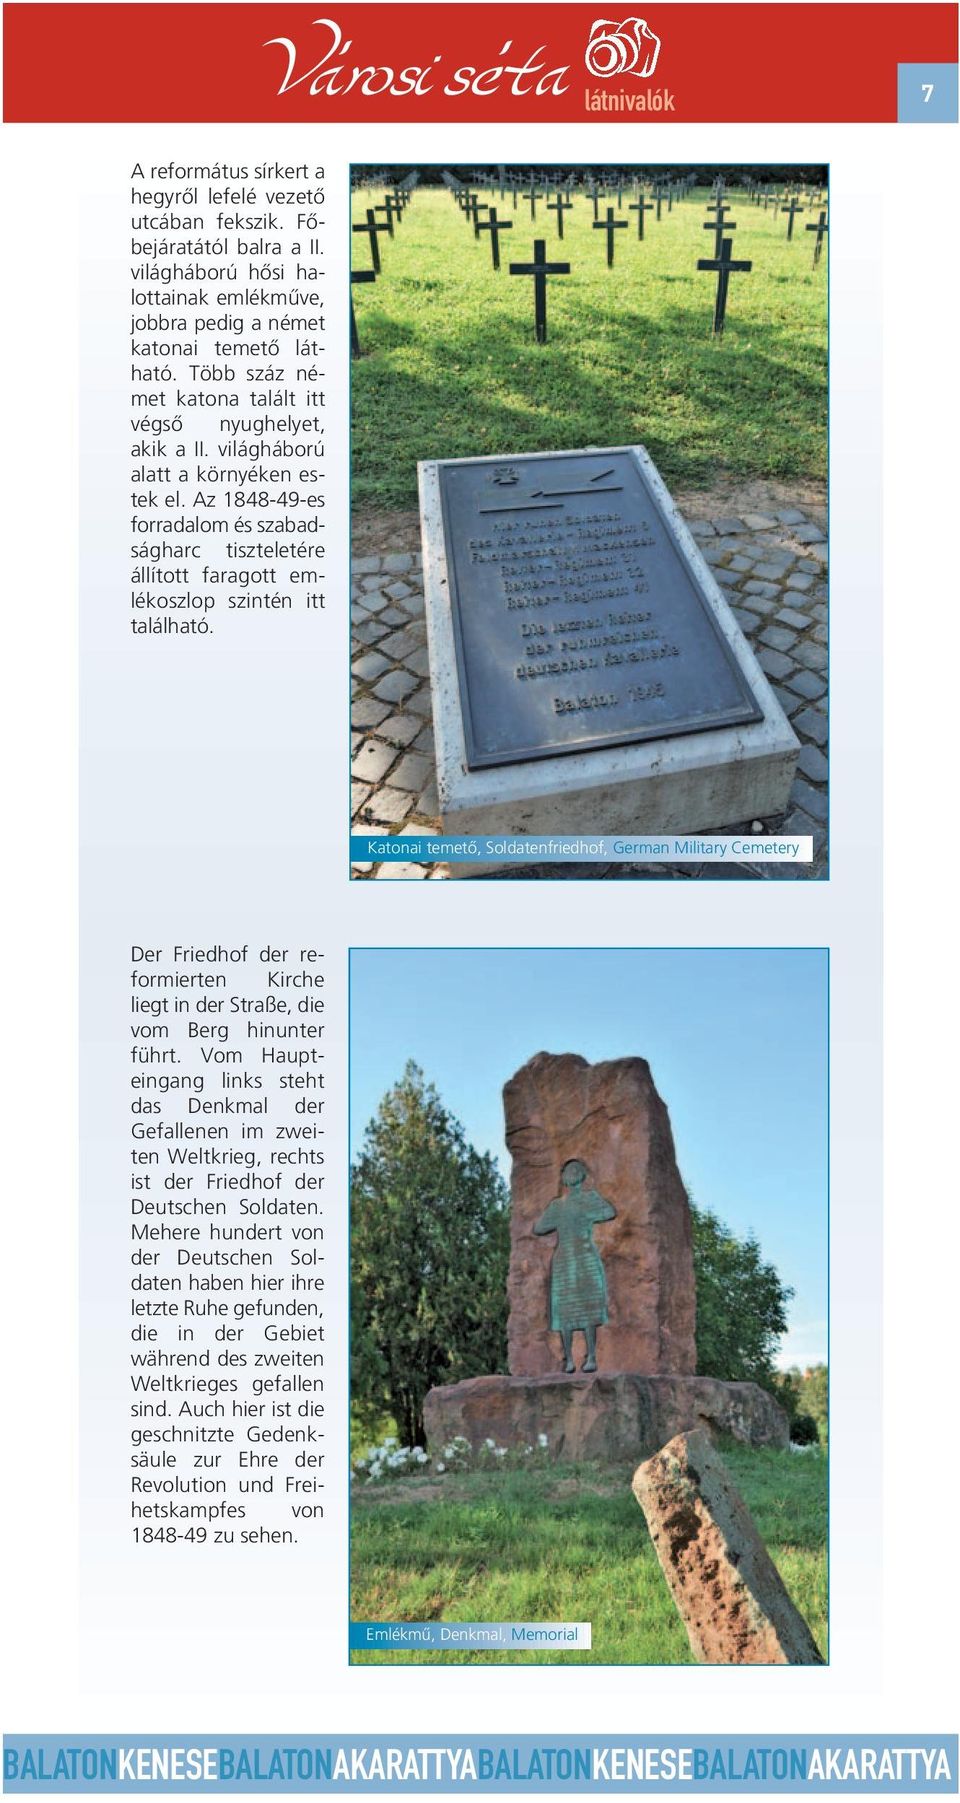 Az 1848-49-es forradalom és szabadságharc tiszteletére állított faragott emlékoszlop szintén itt található.